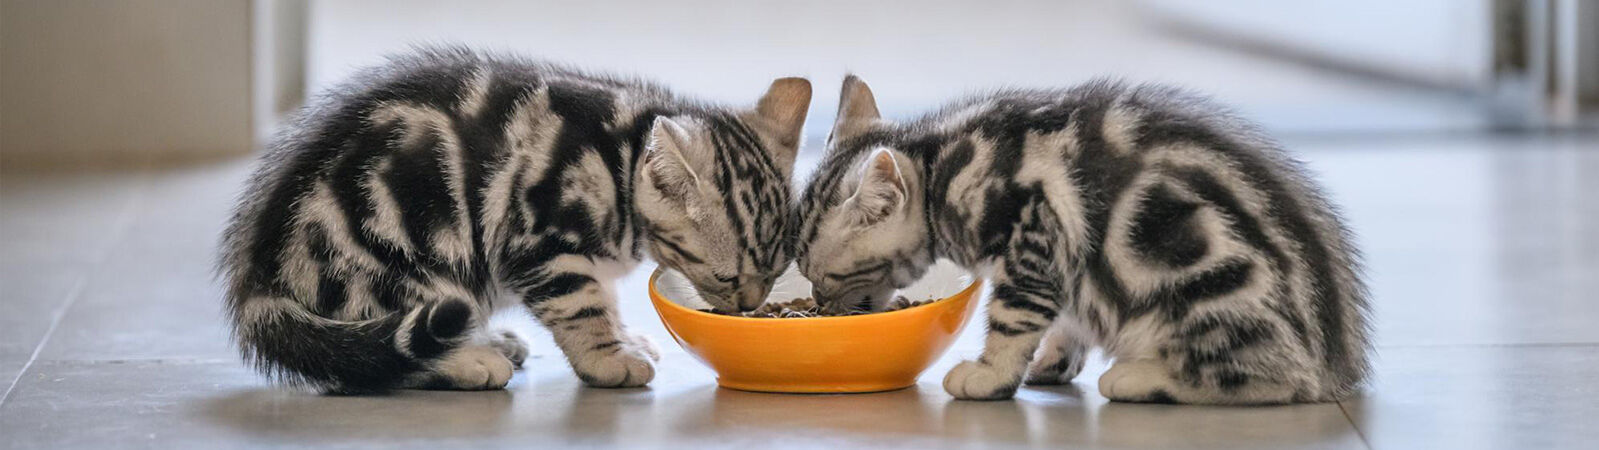 Zwei Katzenbabys fressen aus einem Napf.